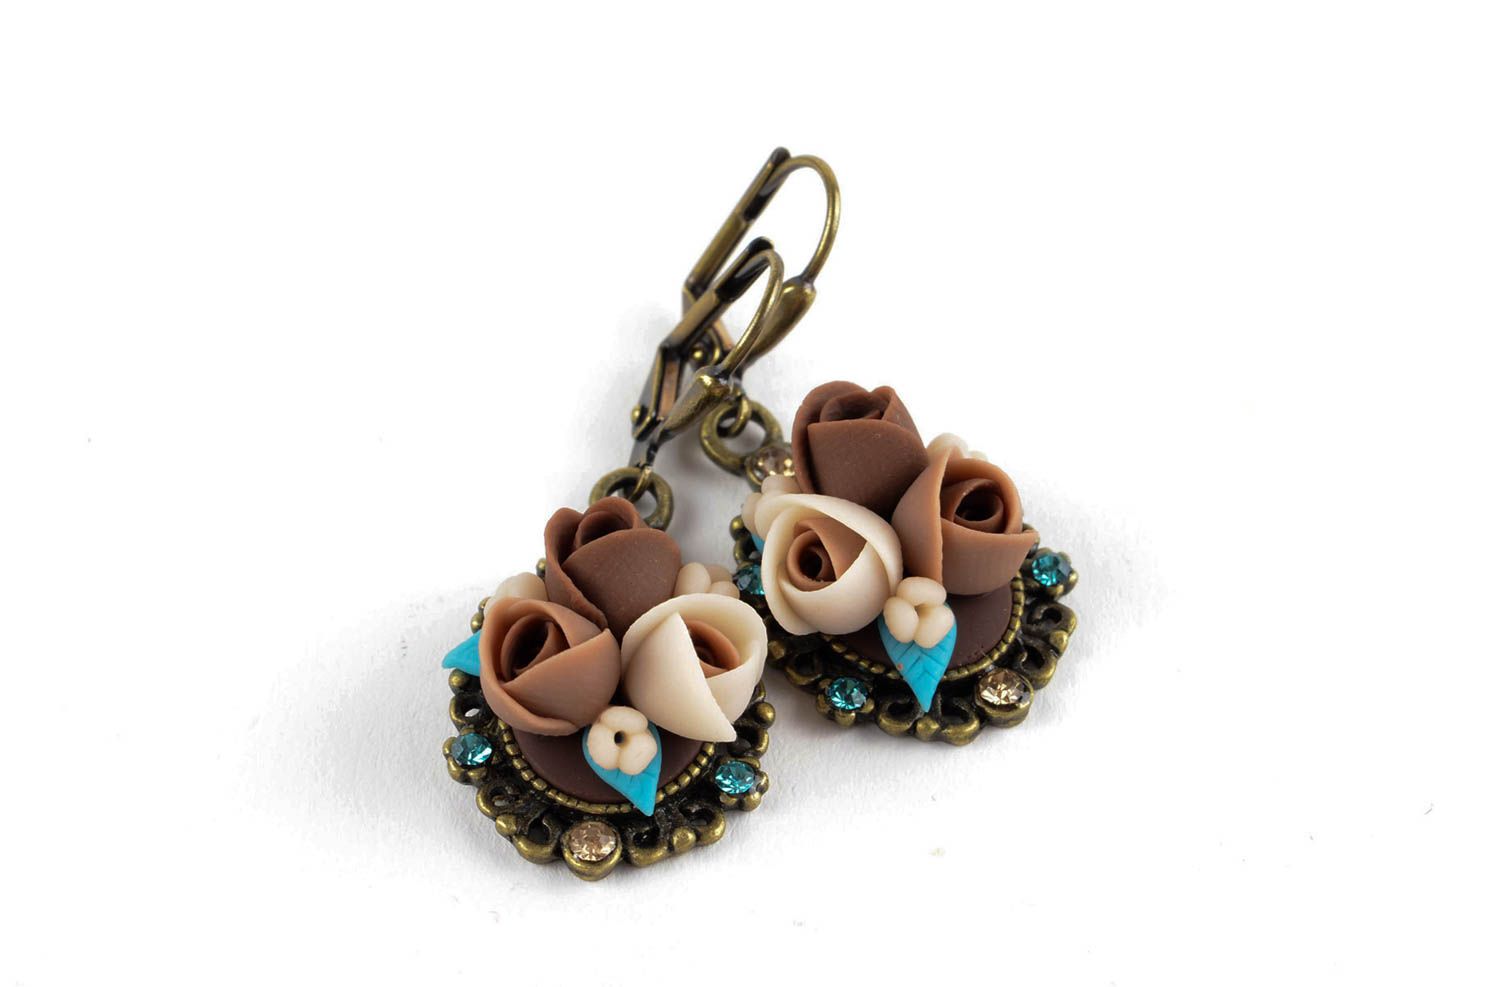 Plastic earrings flower earrings molded earrings with charms handmade goods photo 1